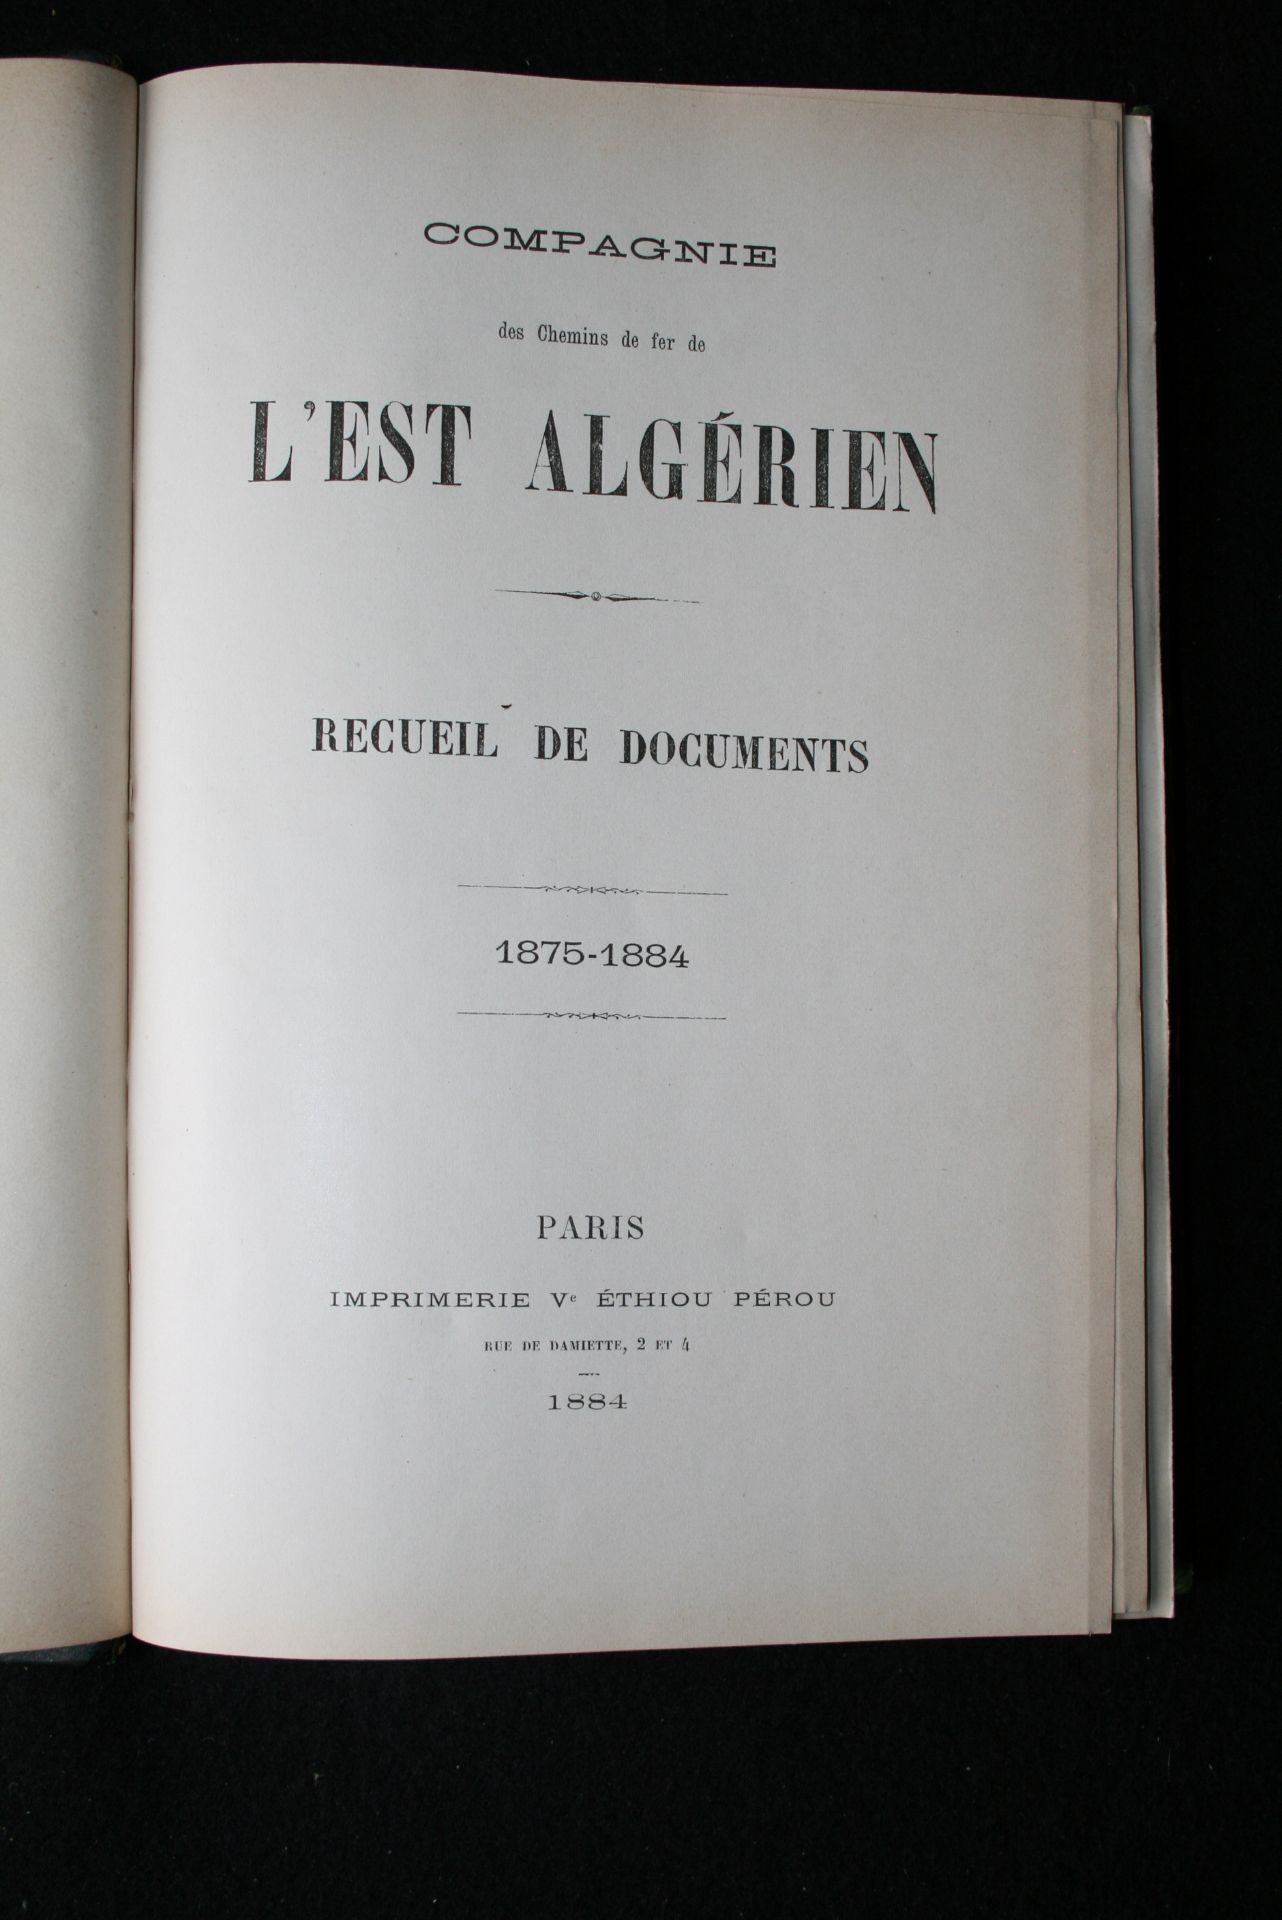 Compagnie des Chemins de fer de l’Est Algérien, Recueil de documents : 1875-1884 [...] - Image 3 of 3